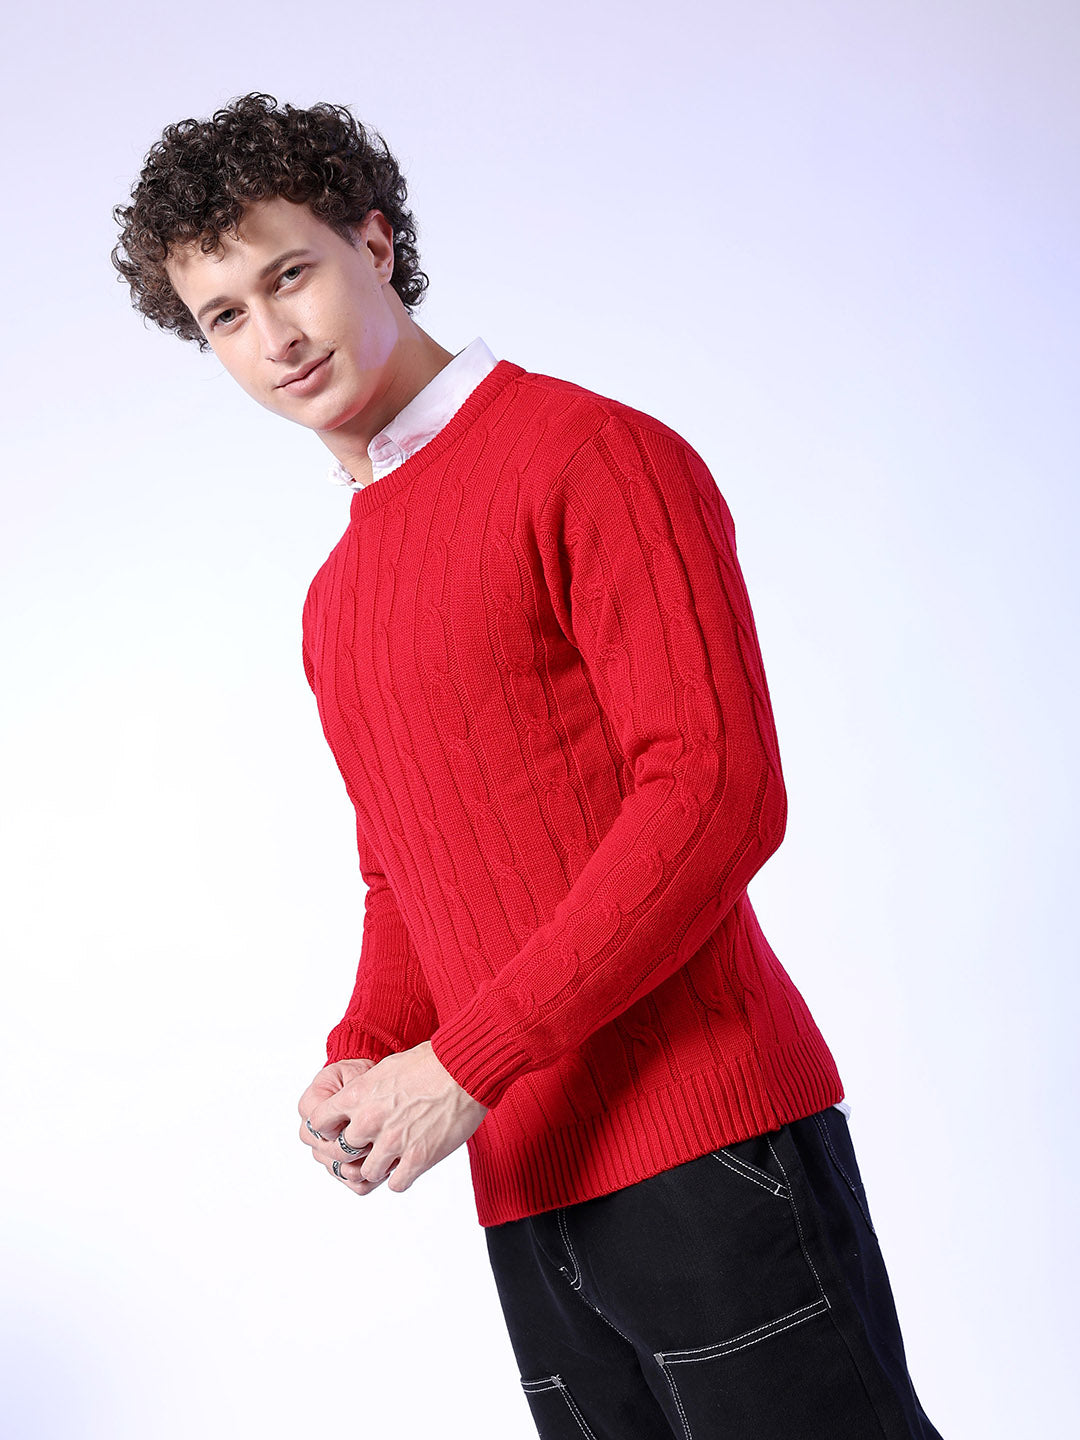 Shop Men Self Design Sweaters Online.